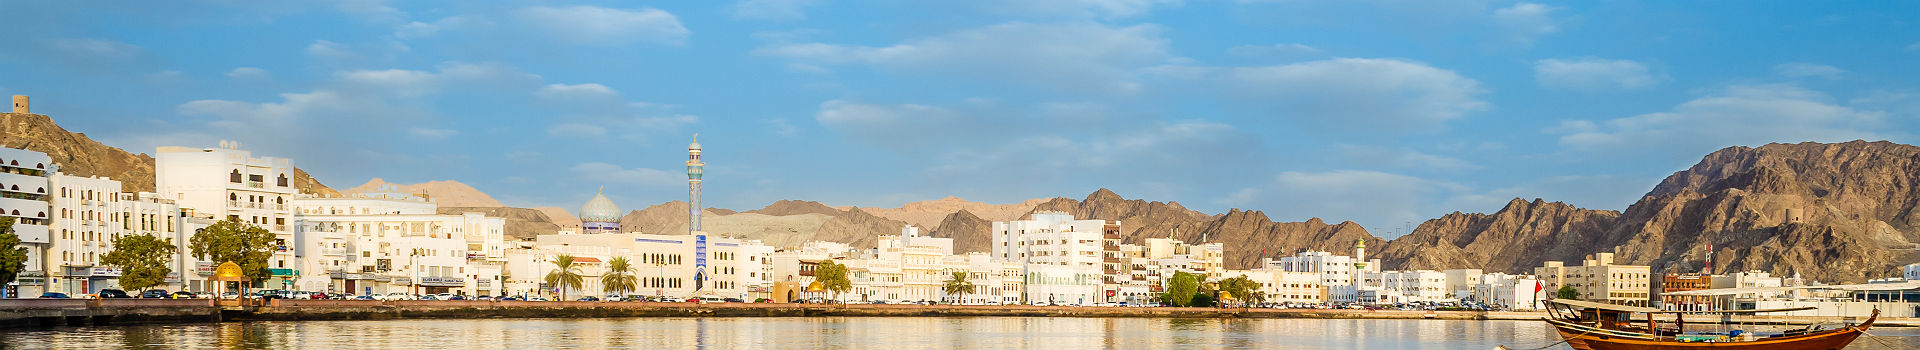 Skyline de Mascate - Oman